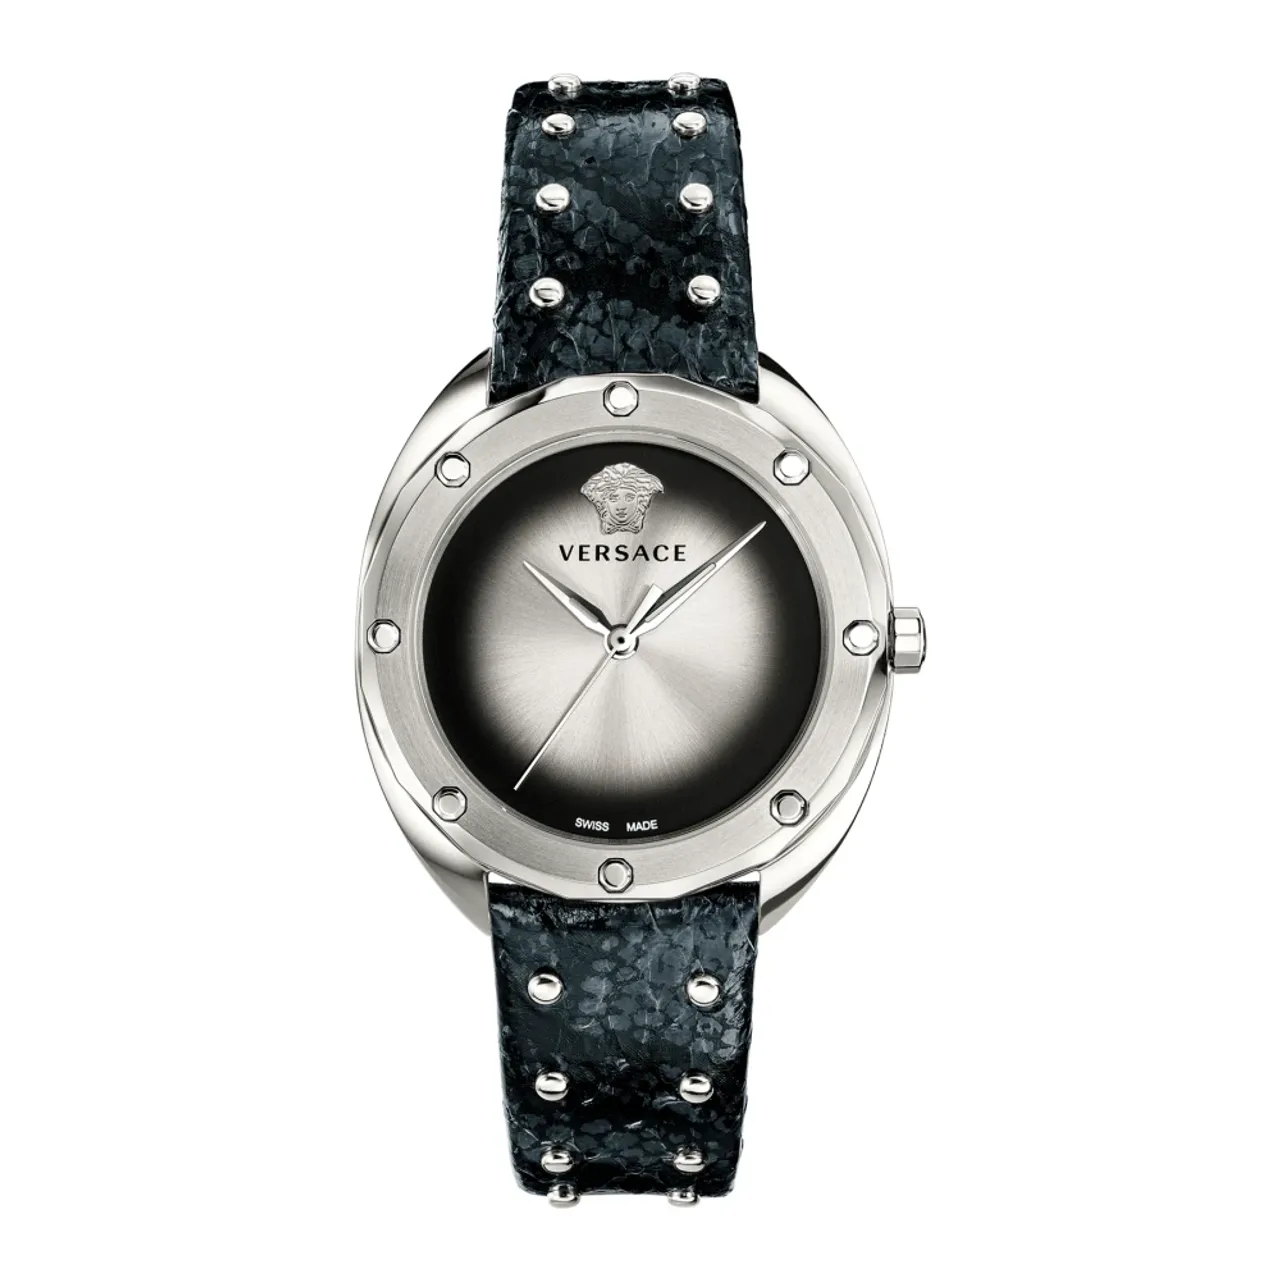 Schwarze Leder Silber Edelstahl Uhr Versace